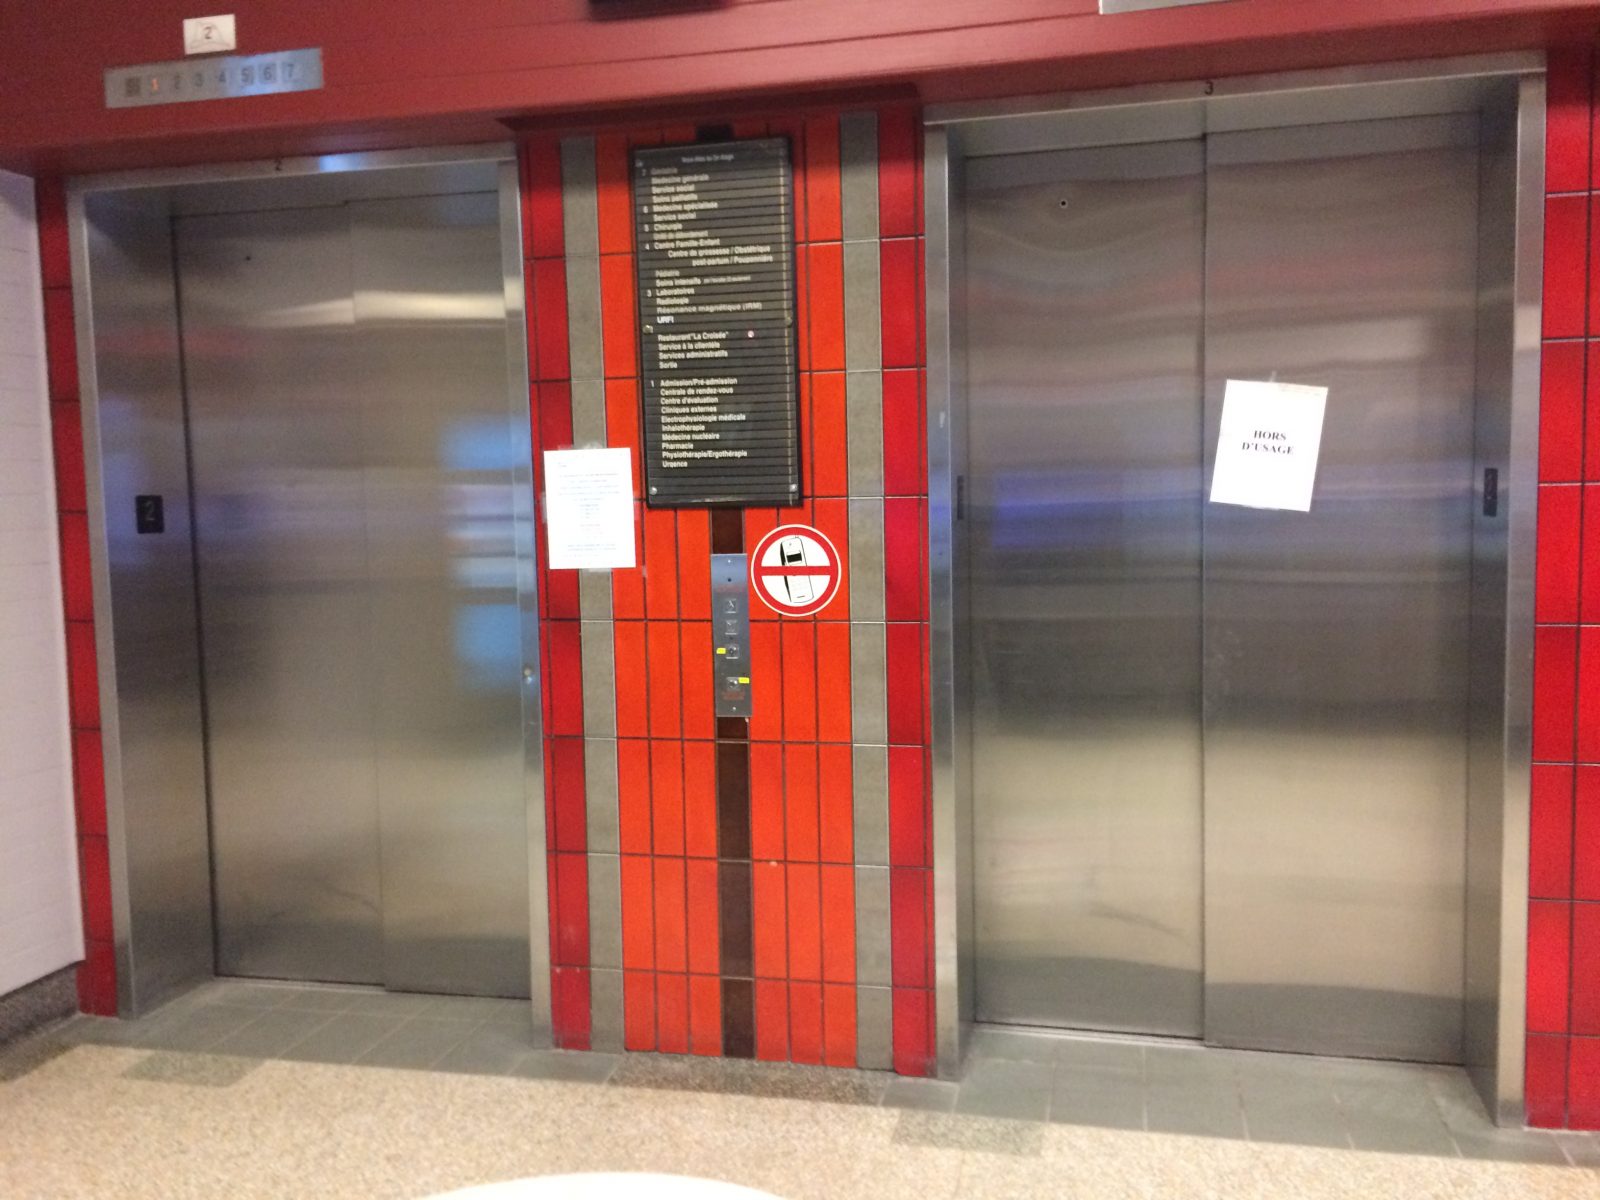 Quelques ascenseurs temporairement hors service à l’hôpital